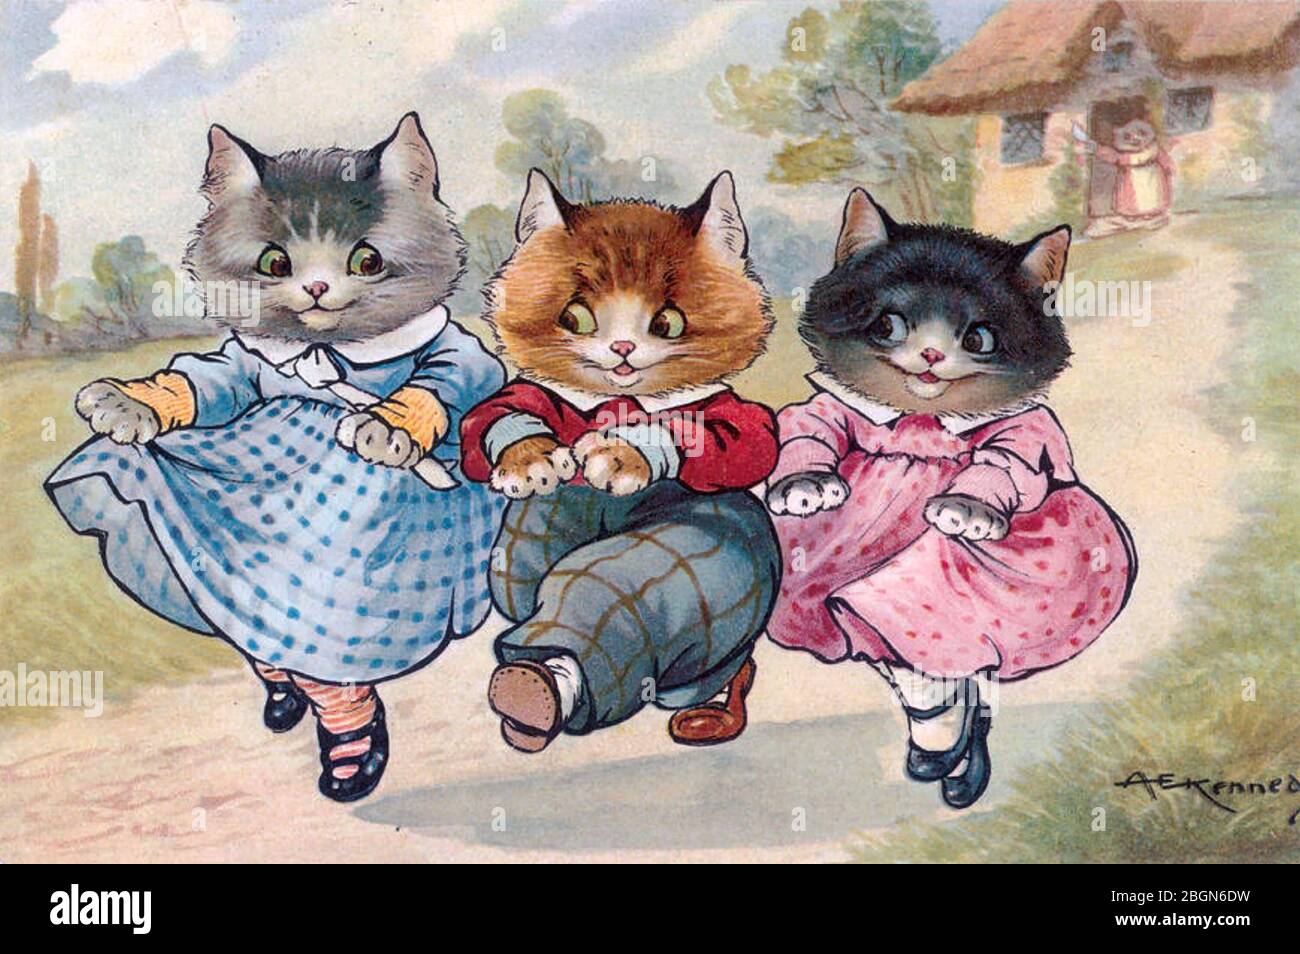 the three little kittens cartoon